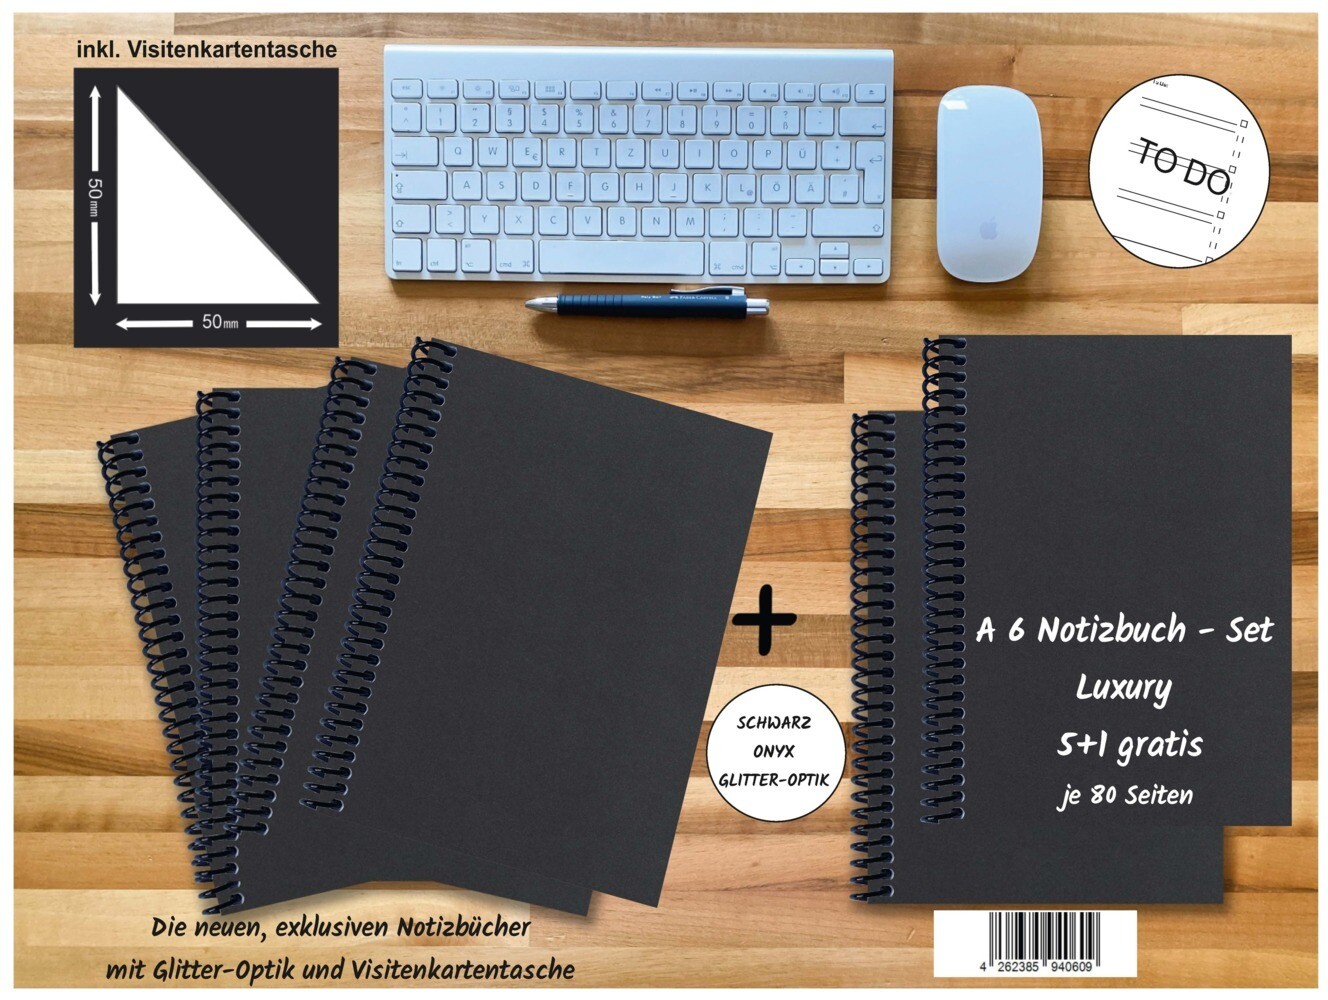 A 6 Notizbuch - Set 4+2 gratis Luxury 80 Seiten SCHWARZ ONYX GLITTER-OPTIK to do